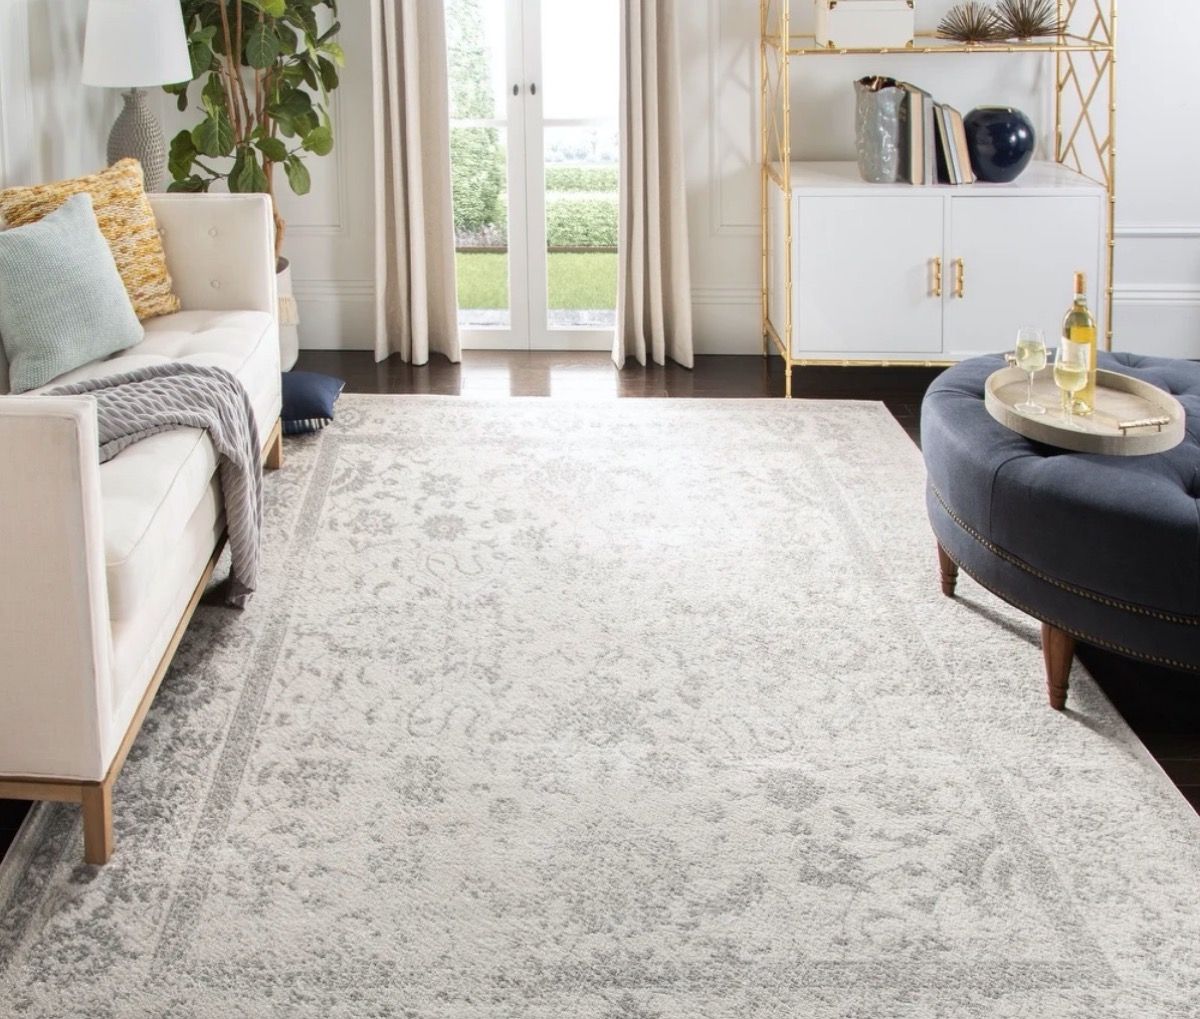 grijs oosters tapijt in de woonkamer